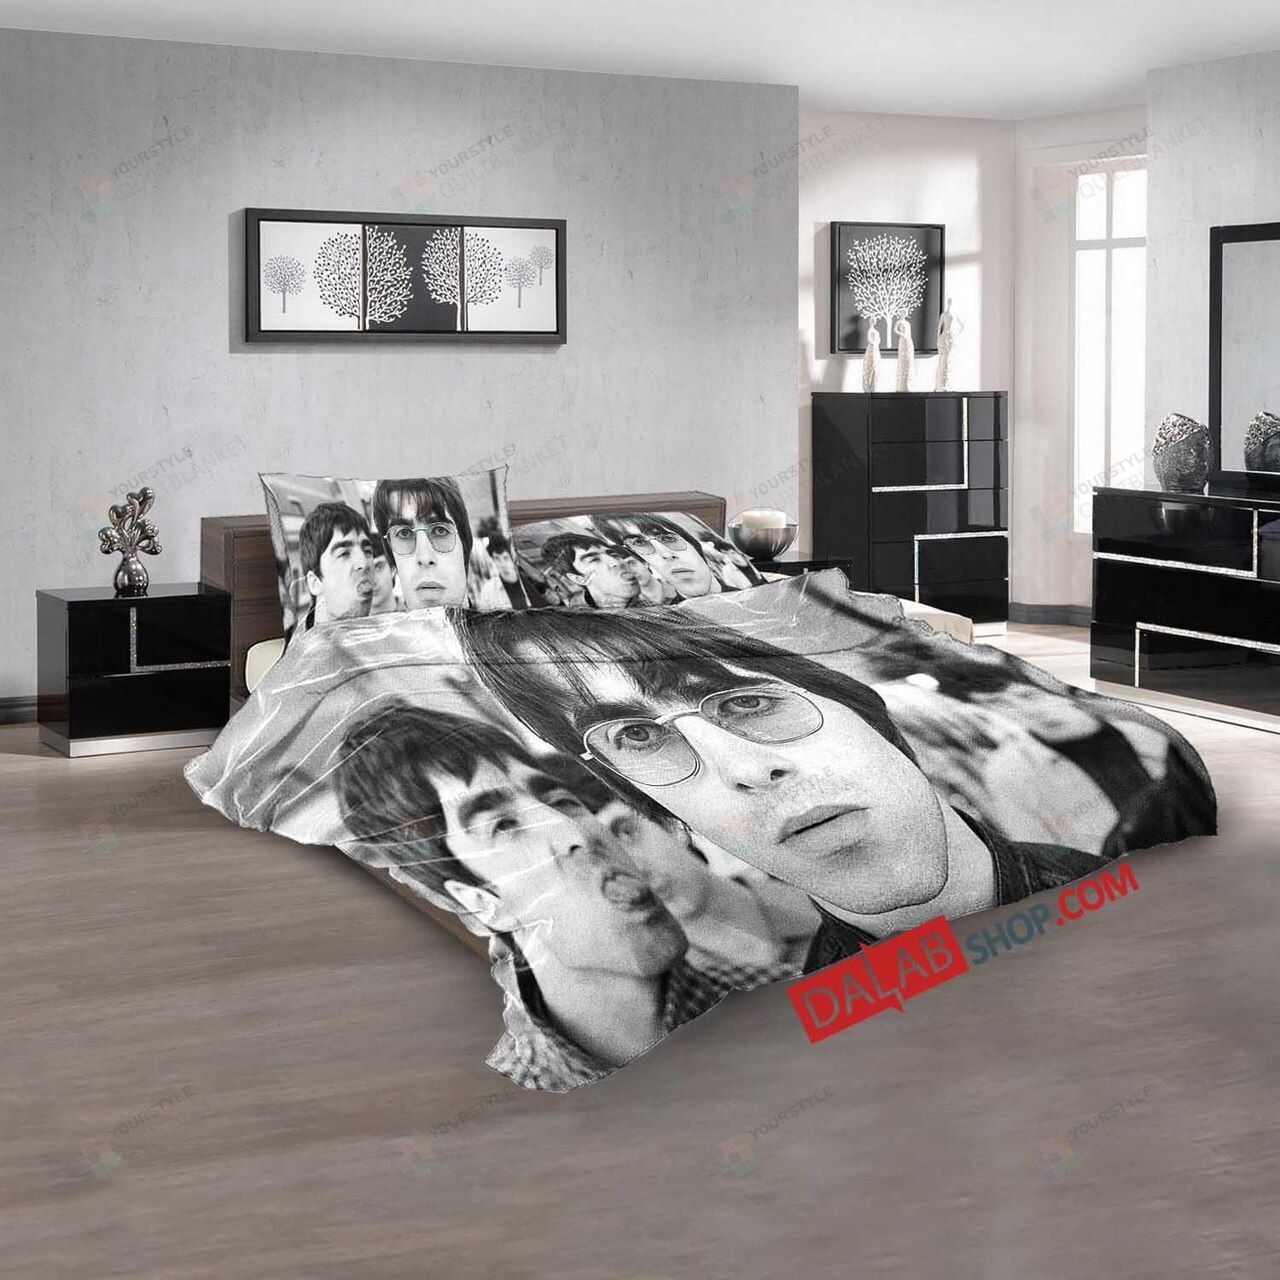 Movie Oasis Supersonic N 3d Duvet Cover Bedroom Sets Bedding Sets